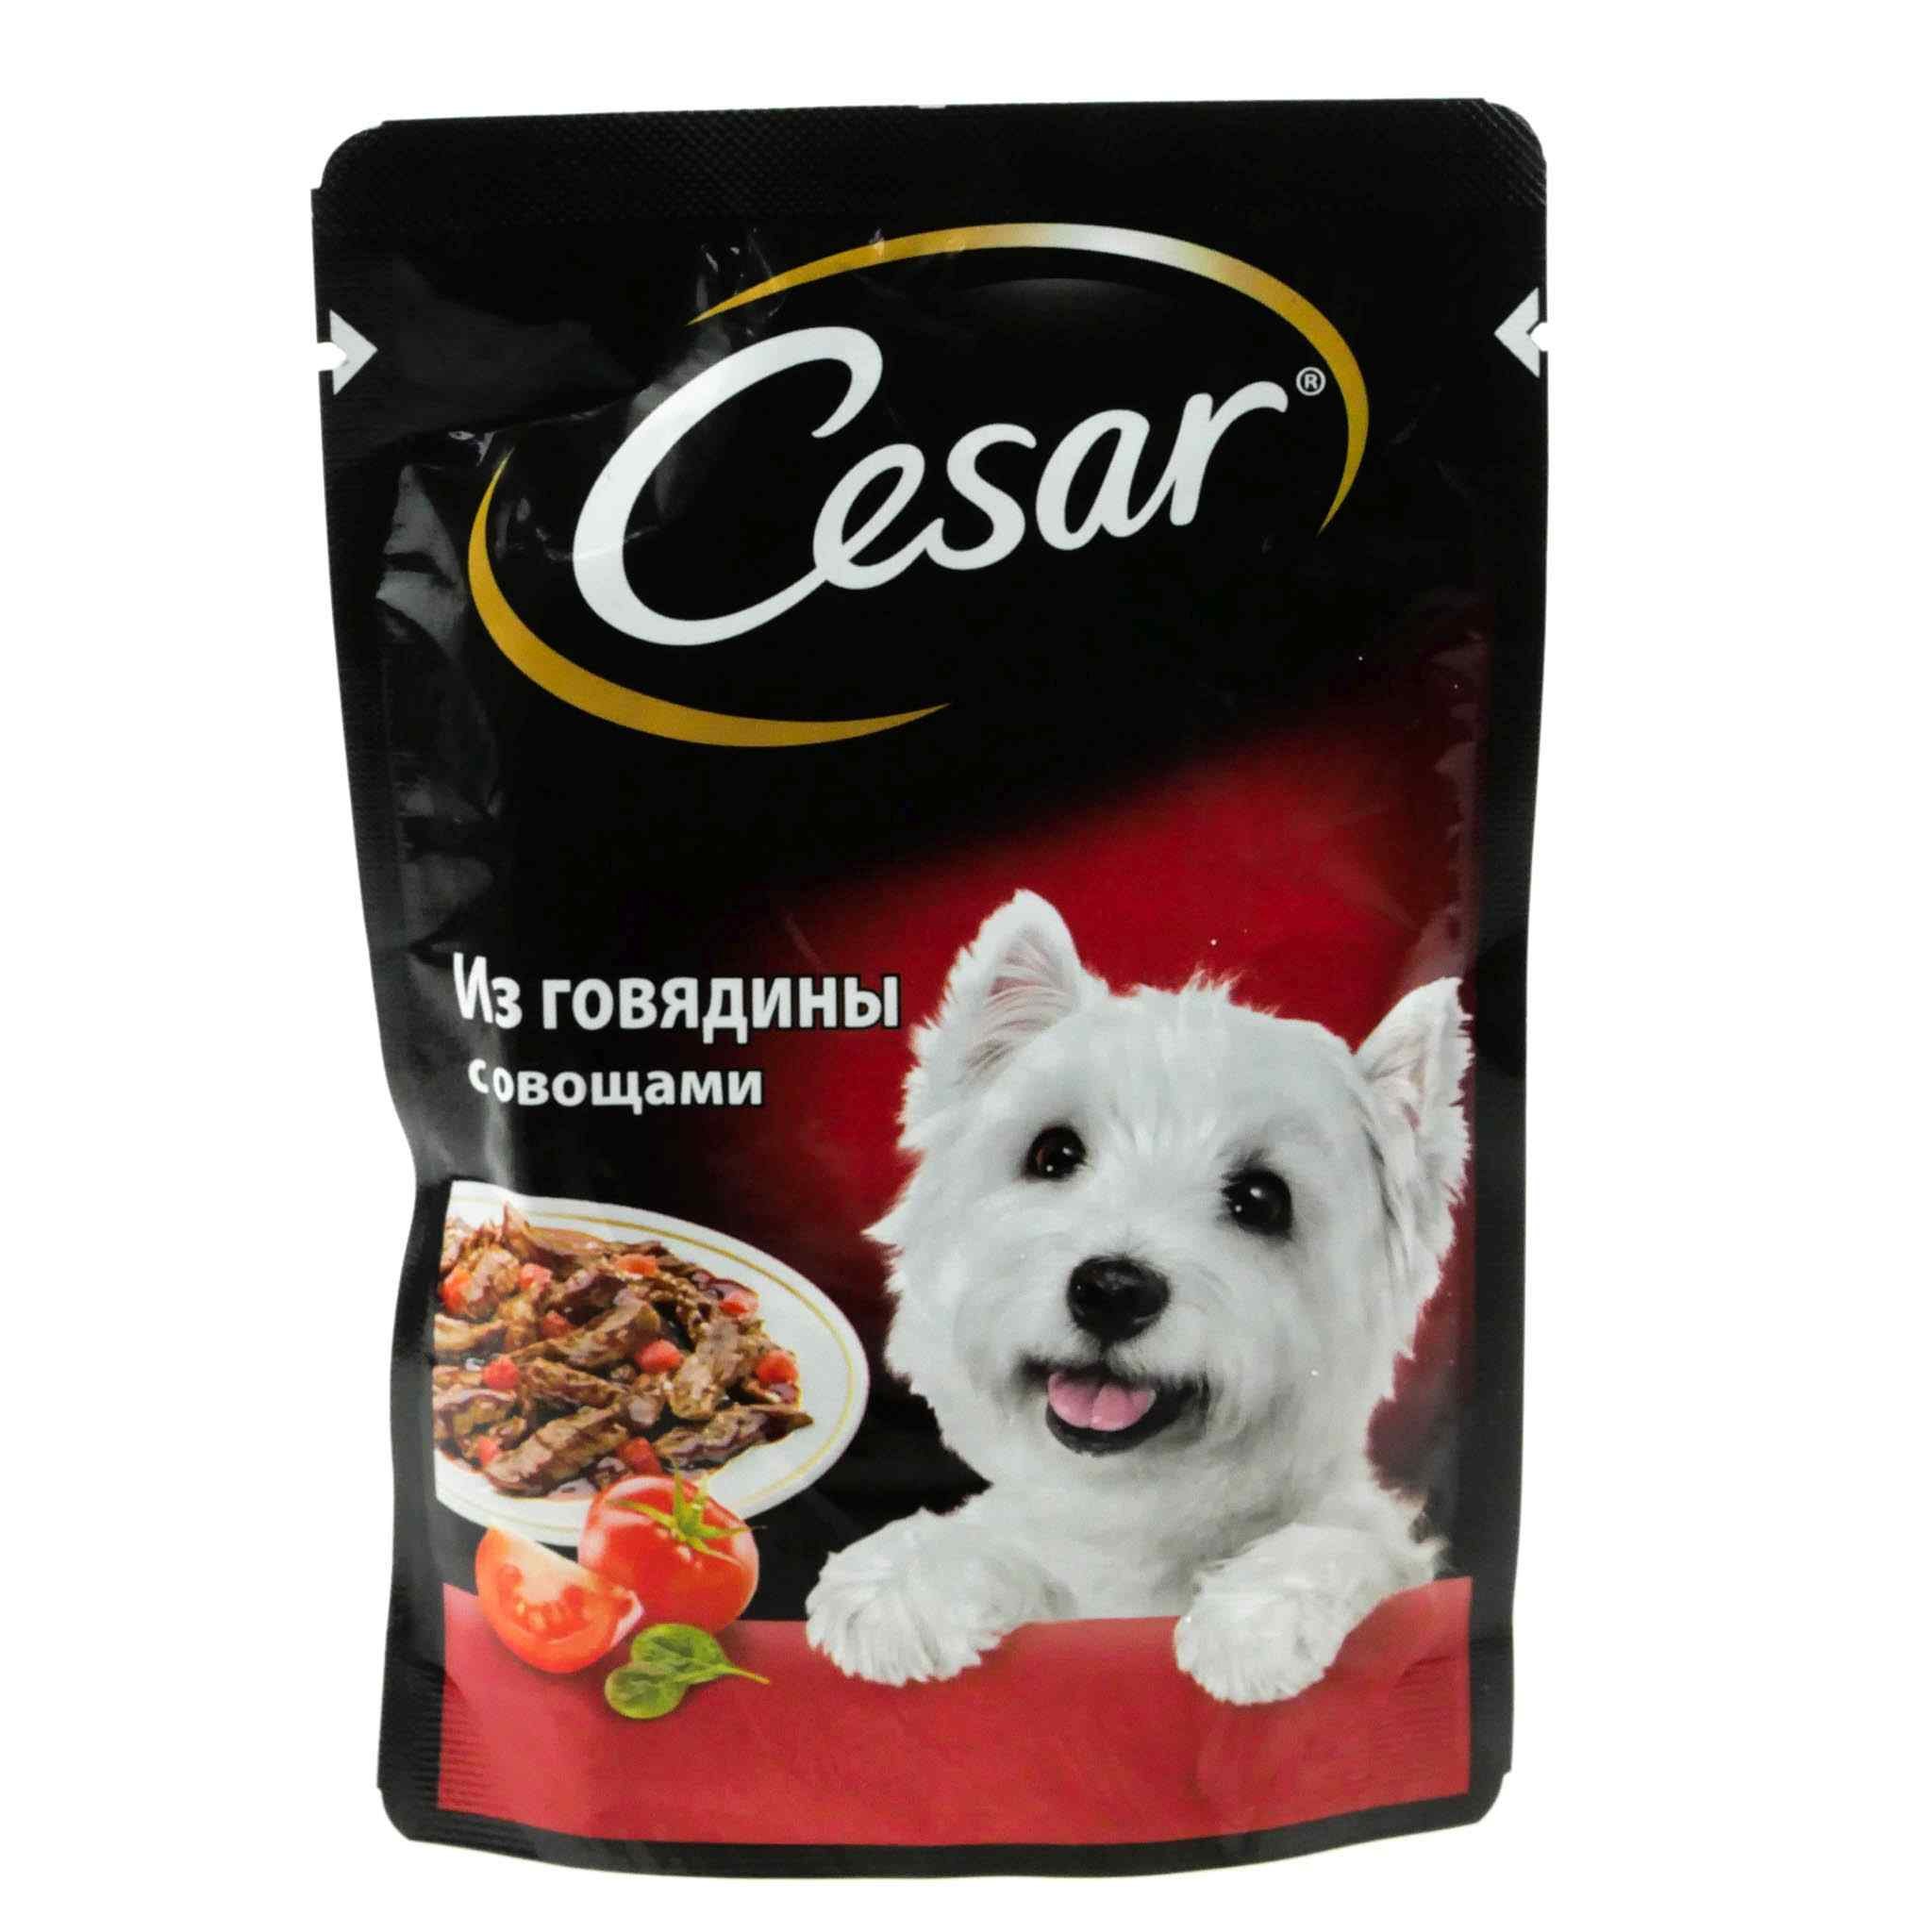 Корм для собак после. Корм говядина с овощами Cesar 85г. Cesar корм для собак говядина с овощами 85г. Cesar корм для собак 85 г говядина.